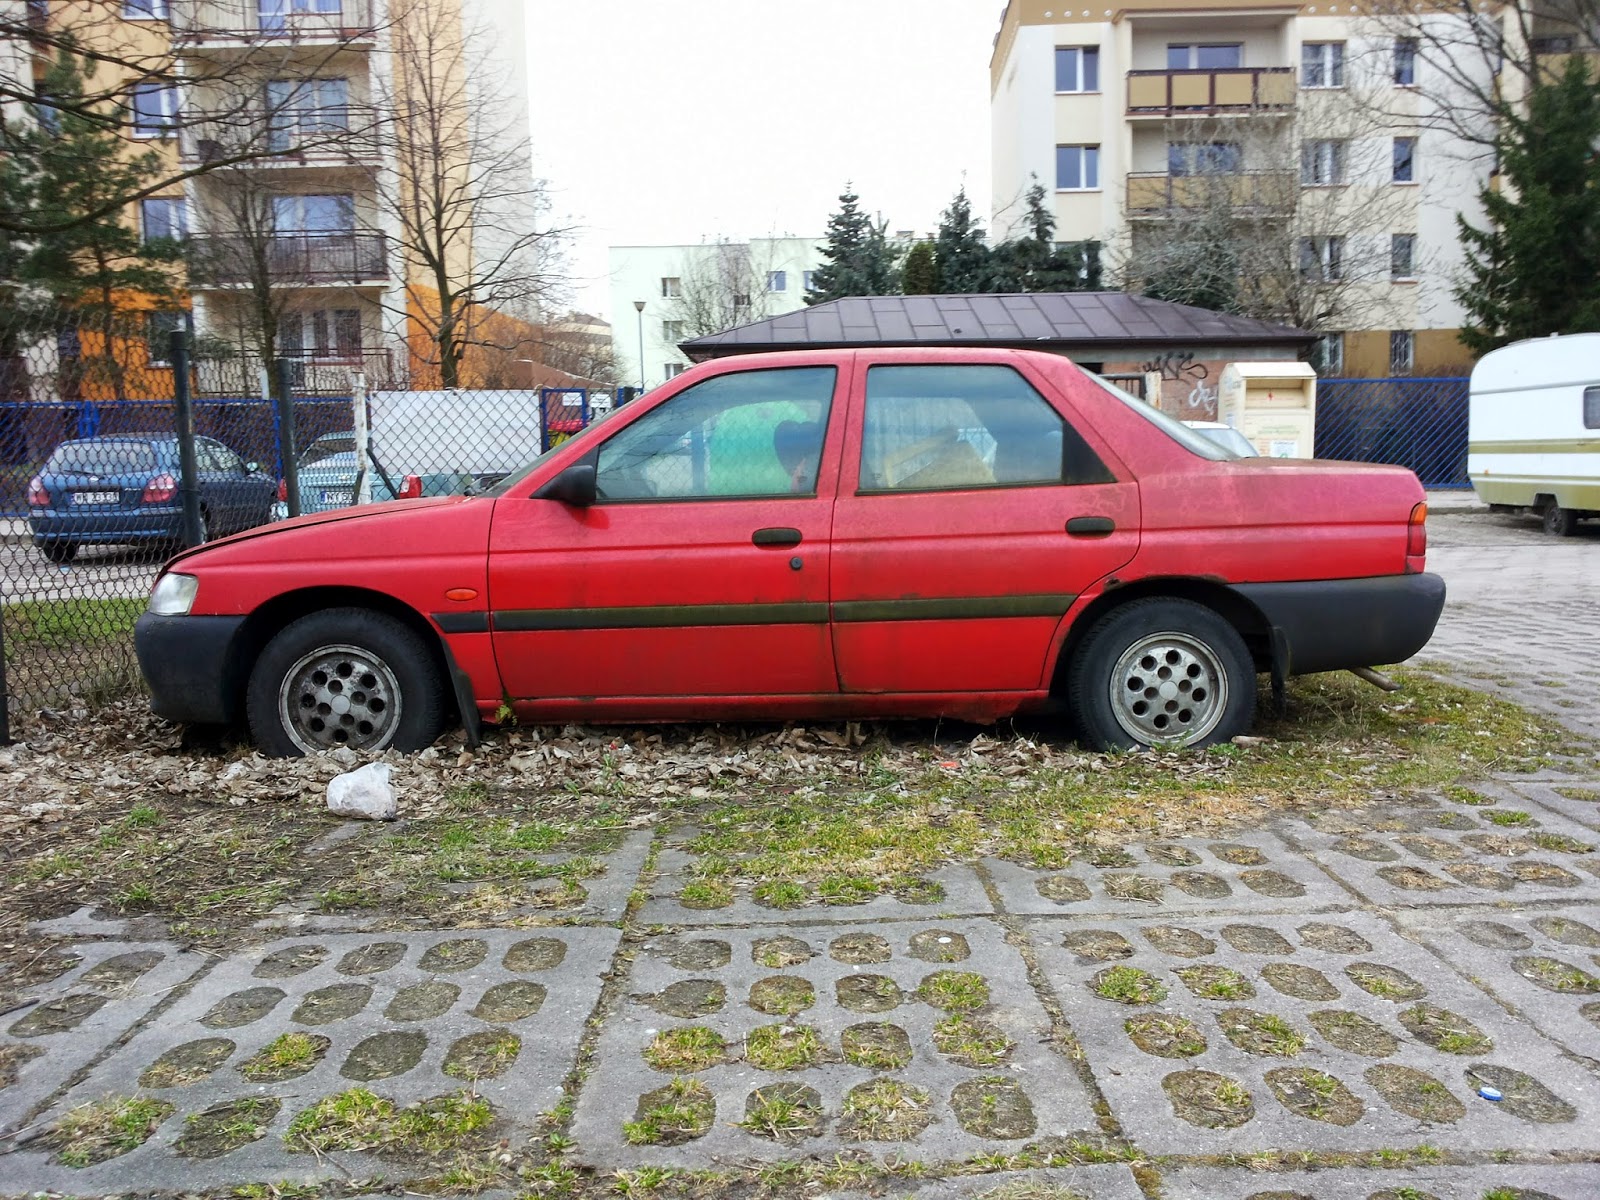 Old Parked Cars Warsaw Jest już za późno 1995 Ford